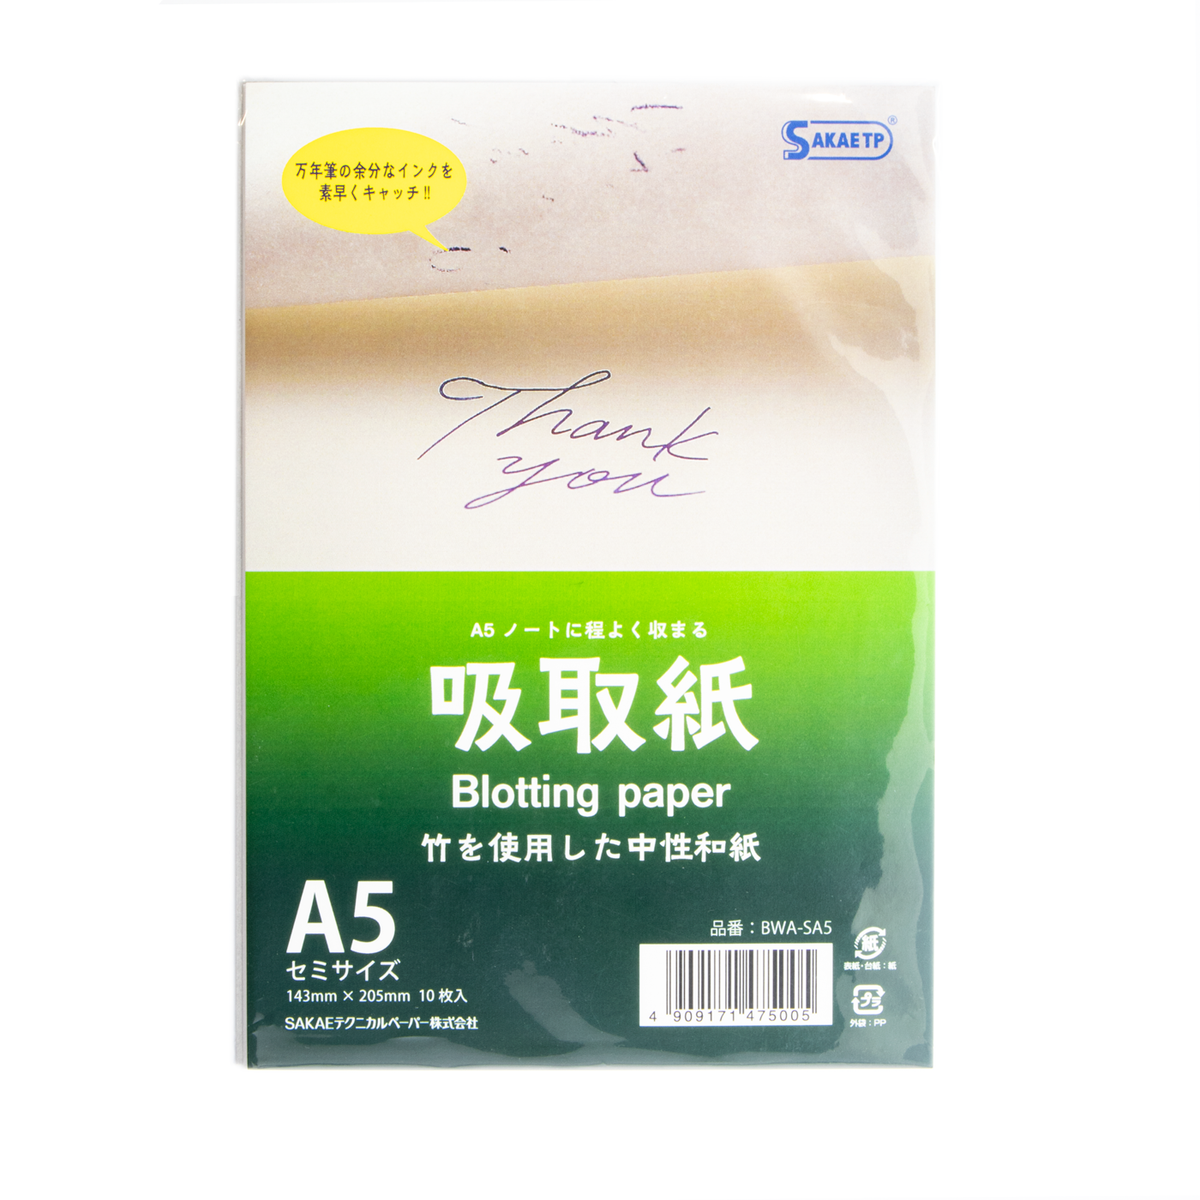 Sakae TP - A5 Semi Sized Blotting Paper